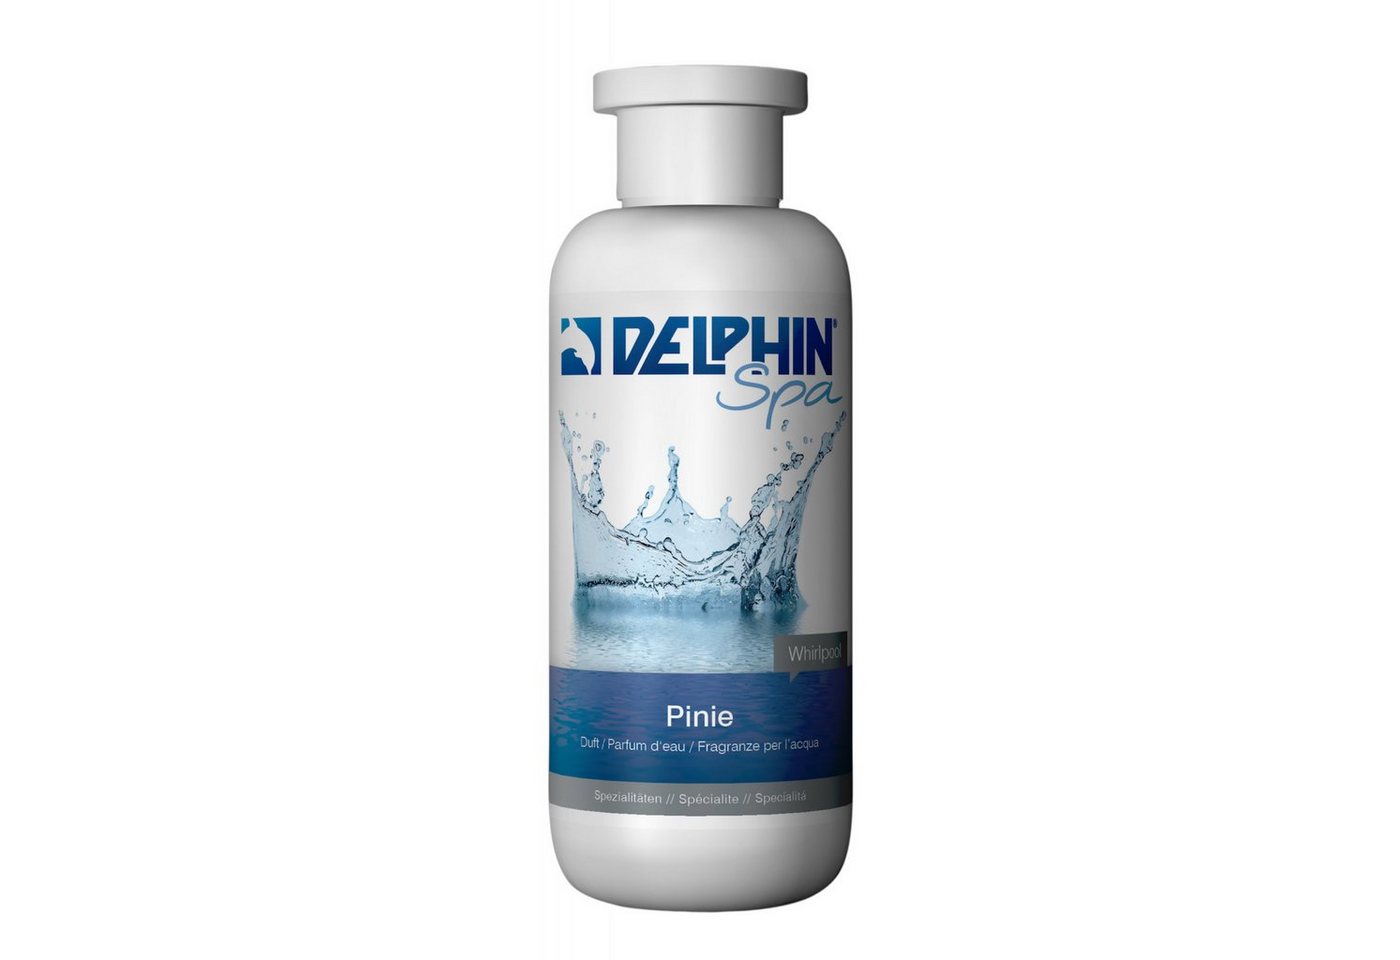 Chemoform Poolpflege Delphin Spa Whirlpool Duft Pinie 250 ml Duftkonzentrat Badezusatz von Chemoform